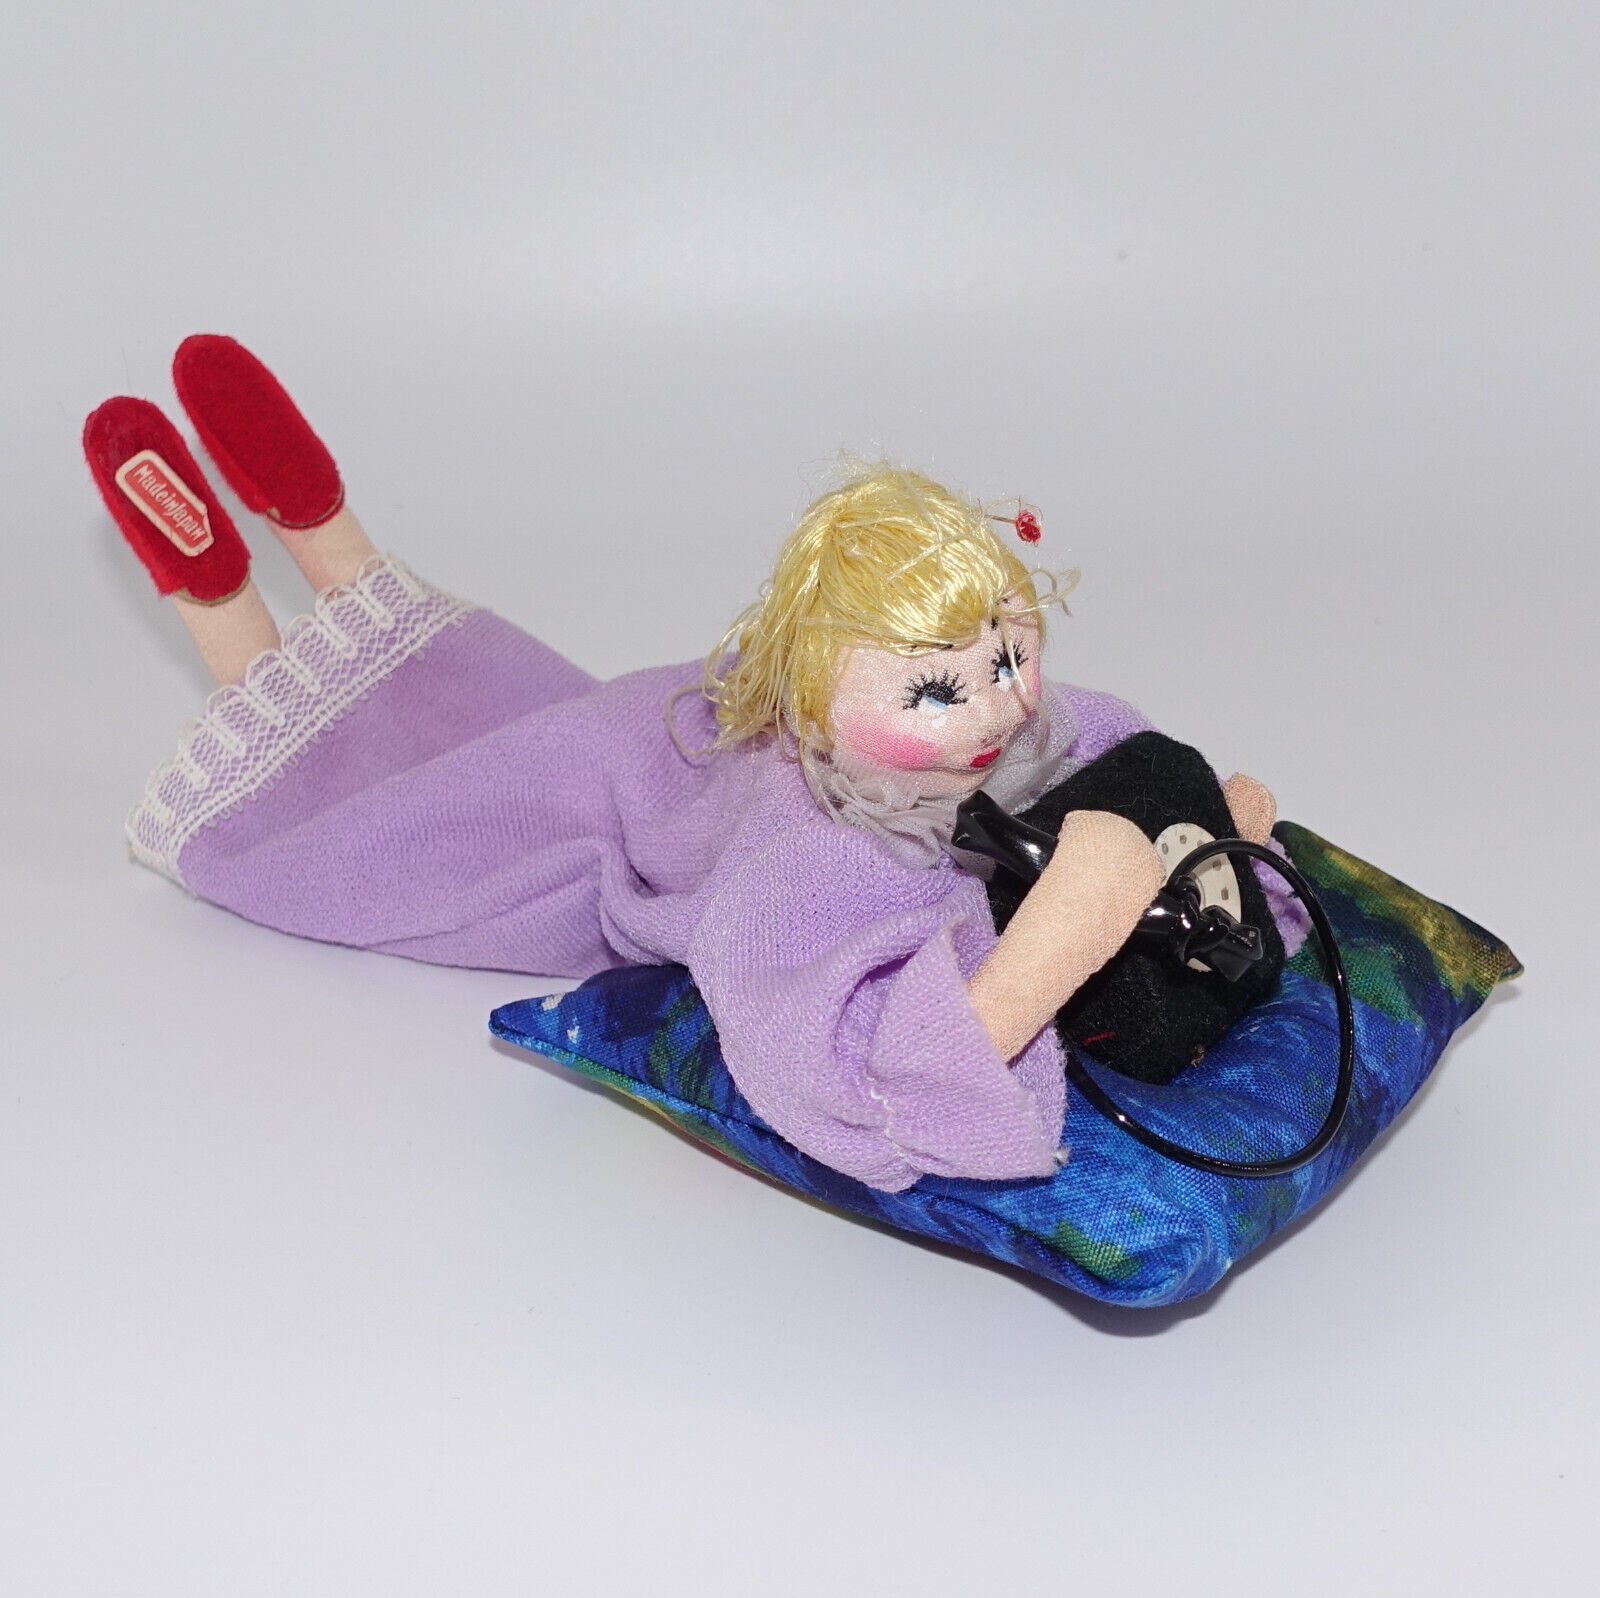 Vintage Teenage Girl on Phone Doll Figurine Japan Klumpe Roldan Style